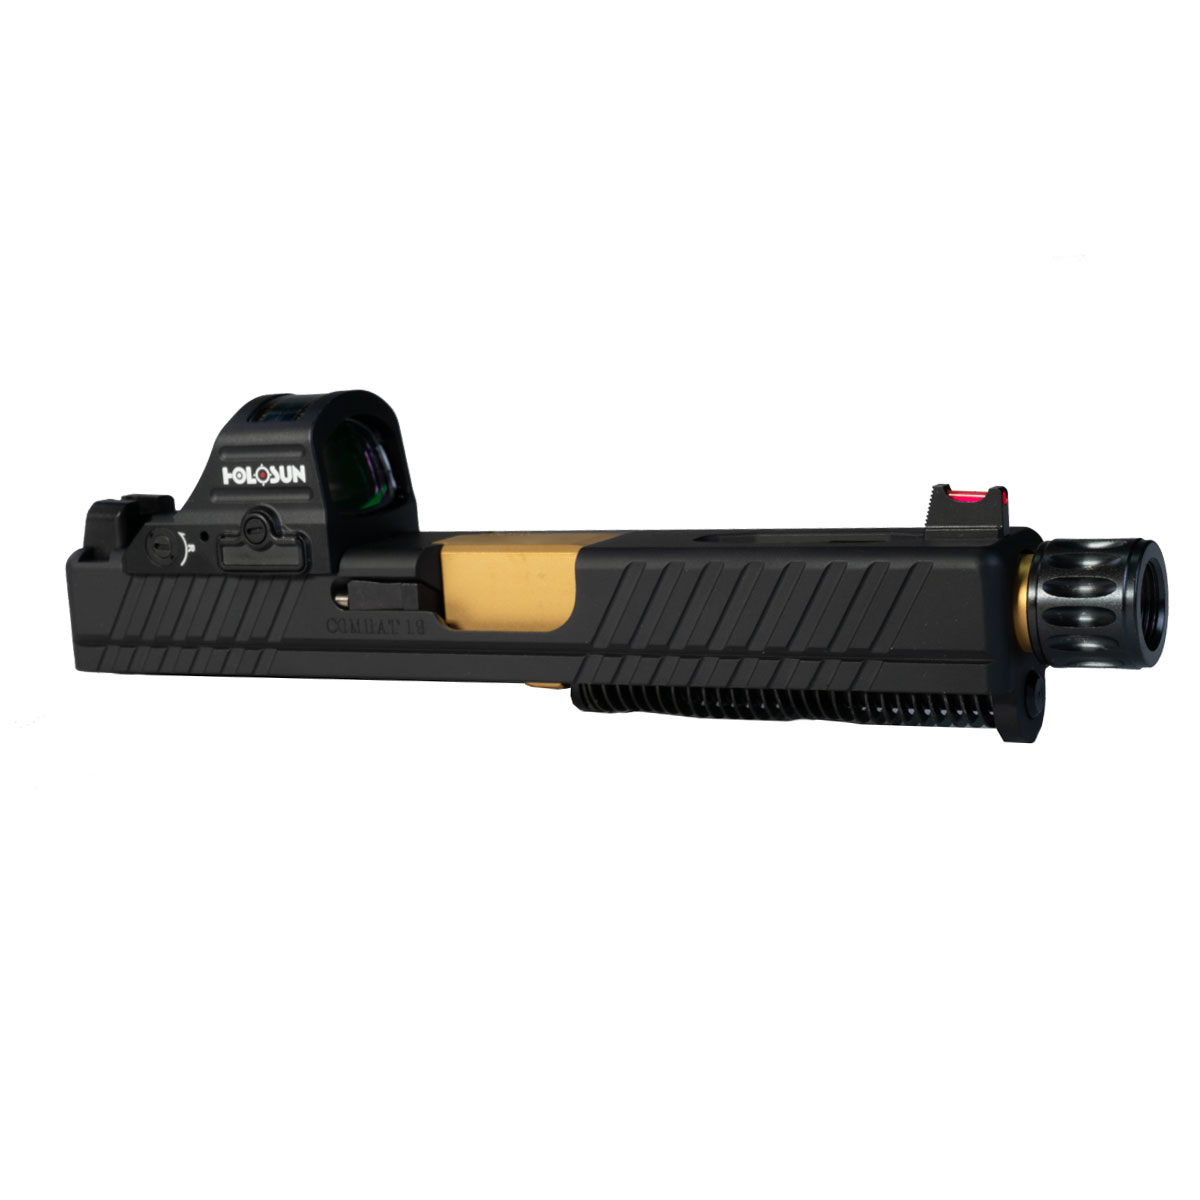 DD 'Pax Vobiscum w/ HS507C-X2 Red Dot' 9mm Complete Slide Kit - Glock 19 Gen 1-3 Compatible